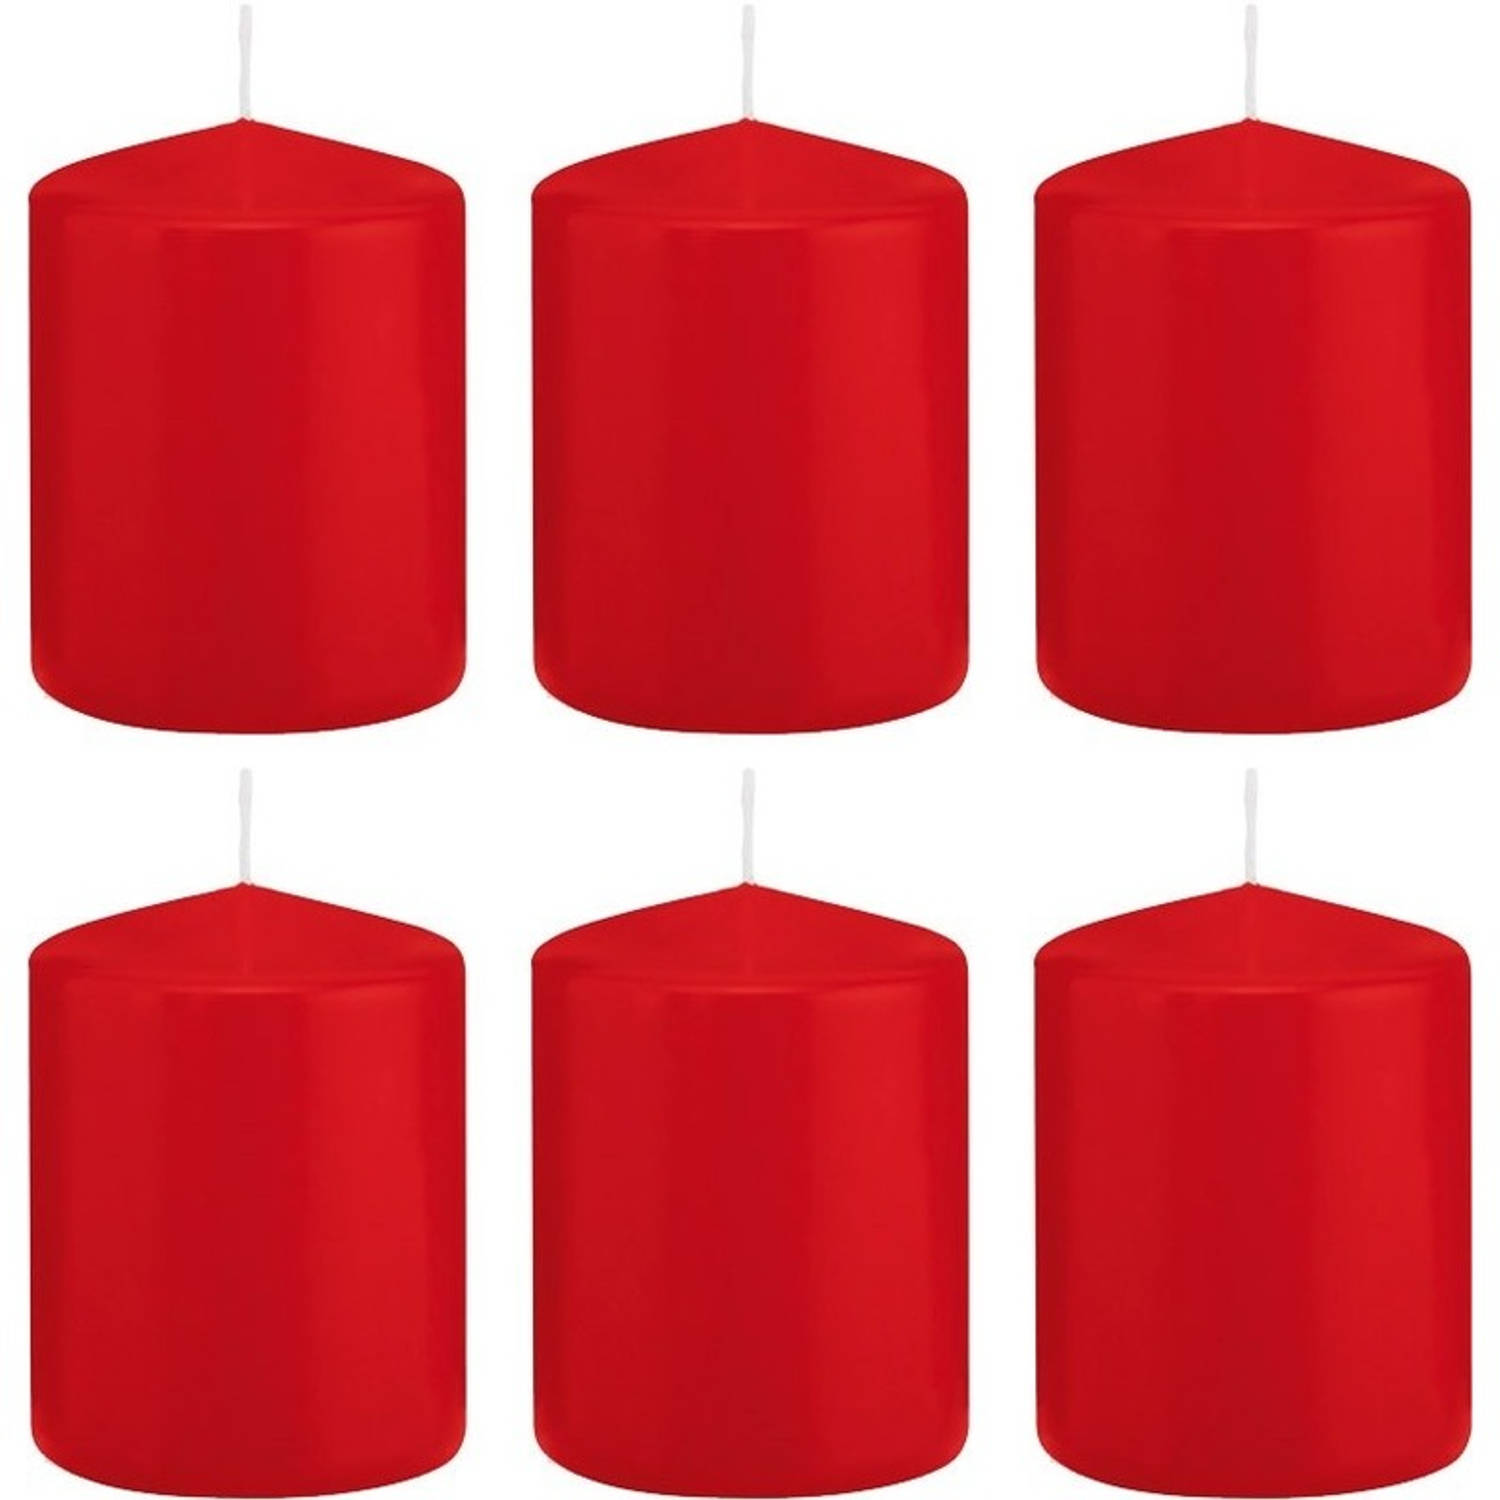 Trend Candles 6x Rode Cilinderkaarsen/stompkaarsen 6 X 8 Cm 29 Branduren - Geurloze Kaarsen - Woondecoraties - Rood